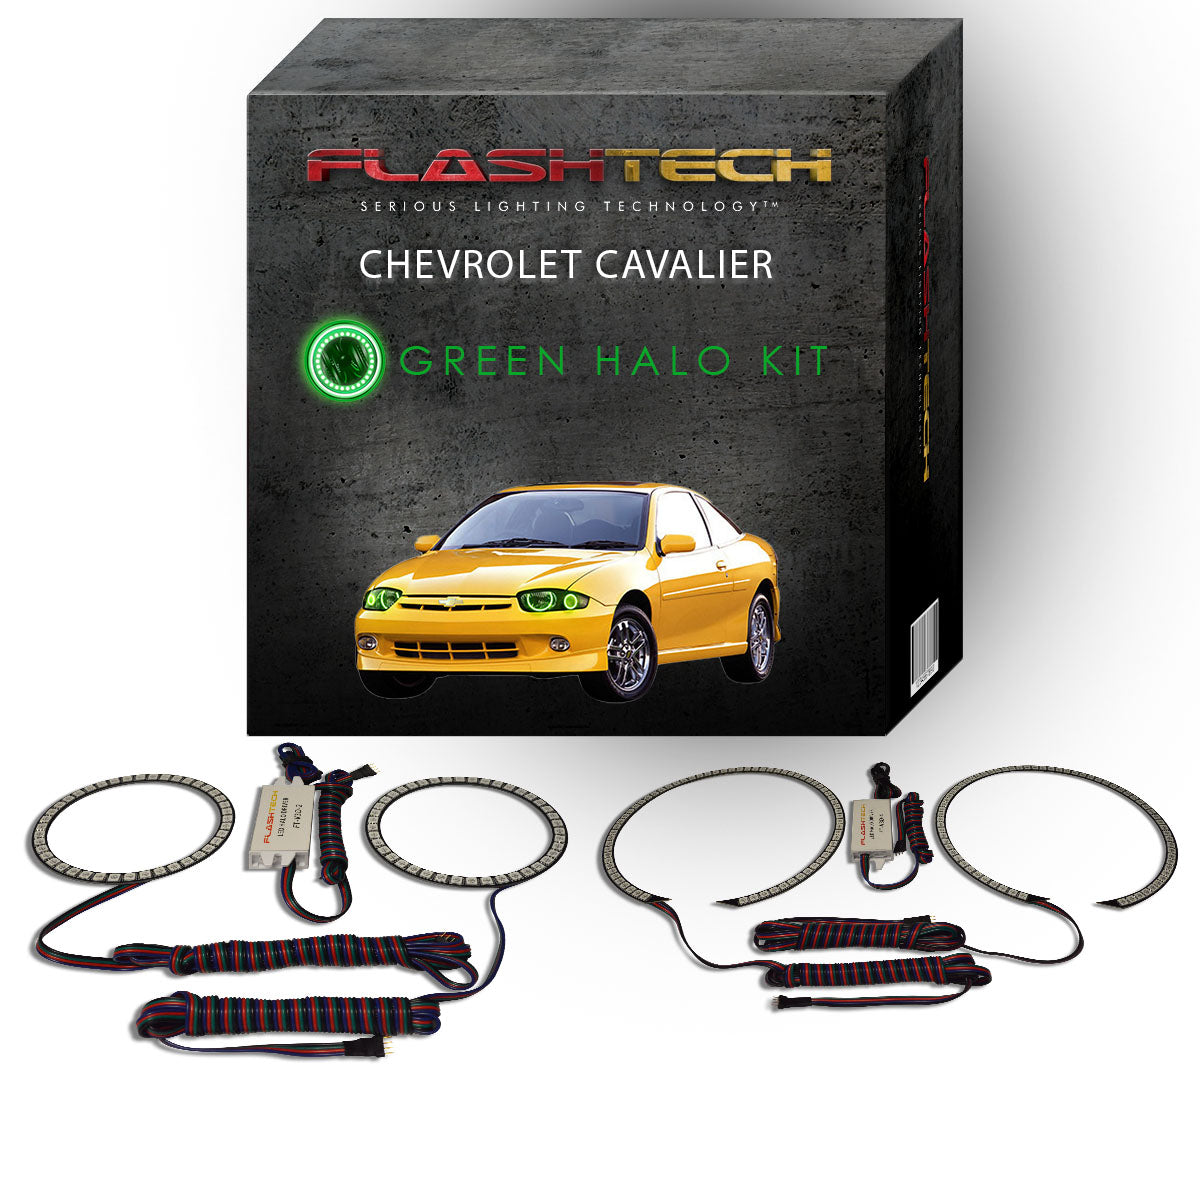 Chevrolet-Cavalier-2003, 2004, 2005-LED-Halo-Headlights-RGB-Bluetooth RF Remote-CY-CV0305-V3HBTRF